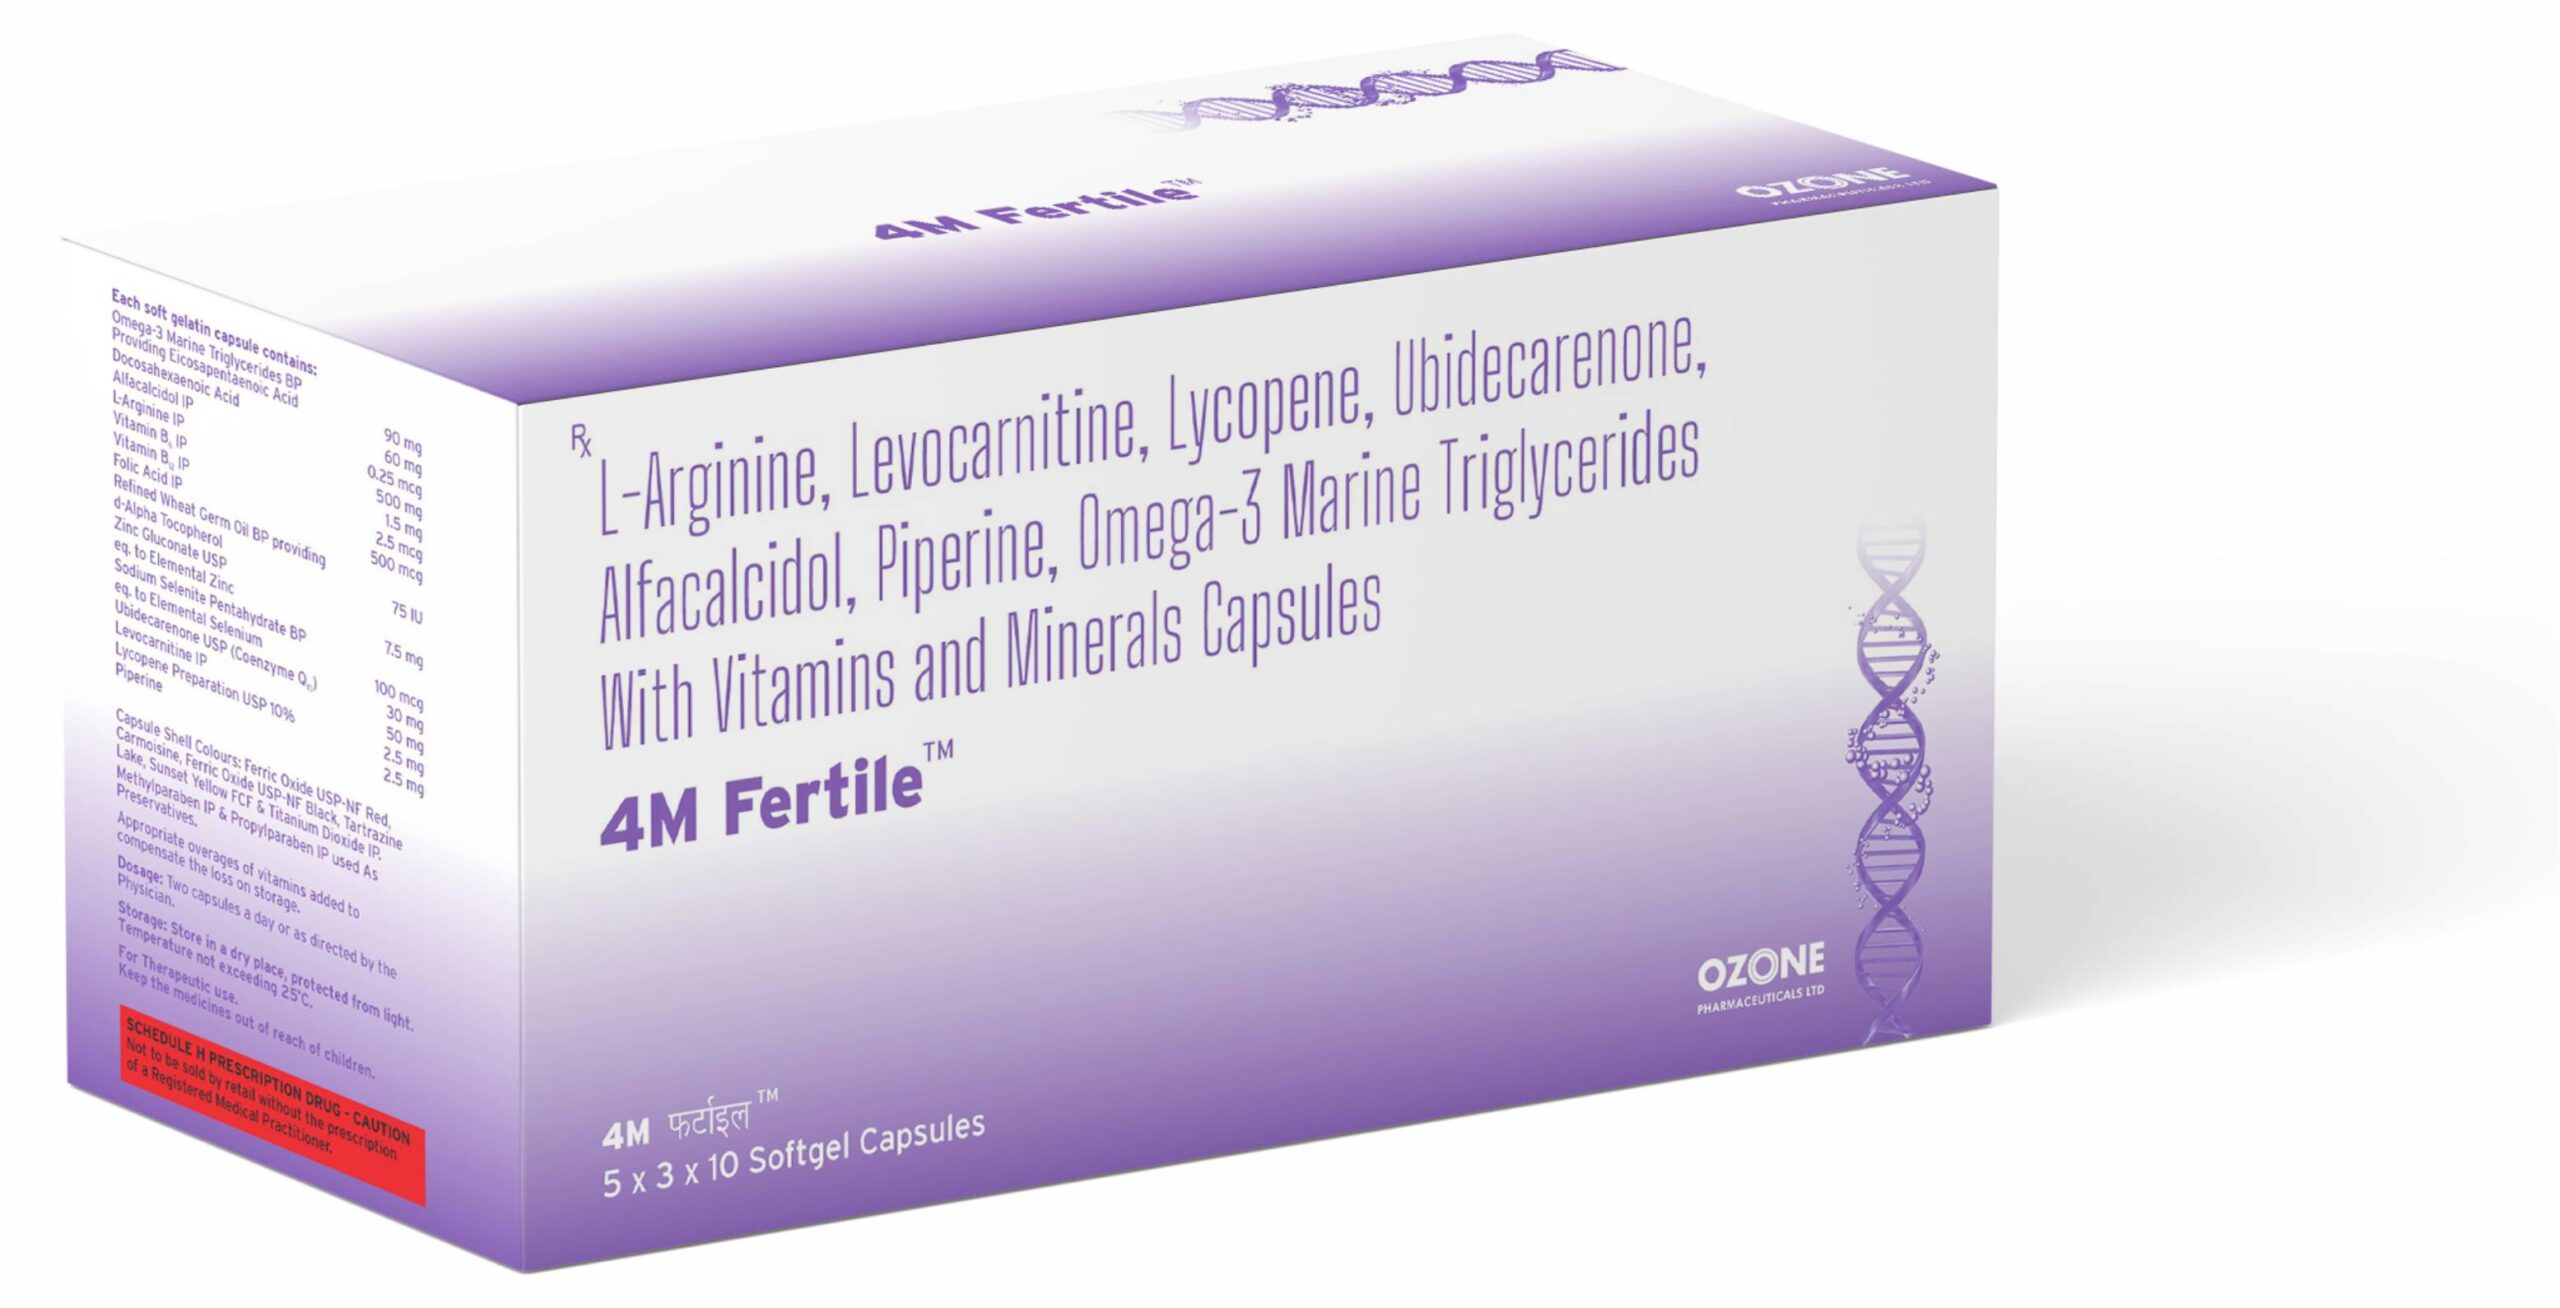 4M Fertile capsules